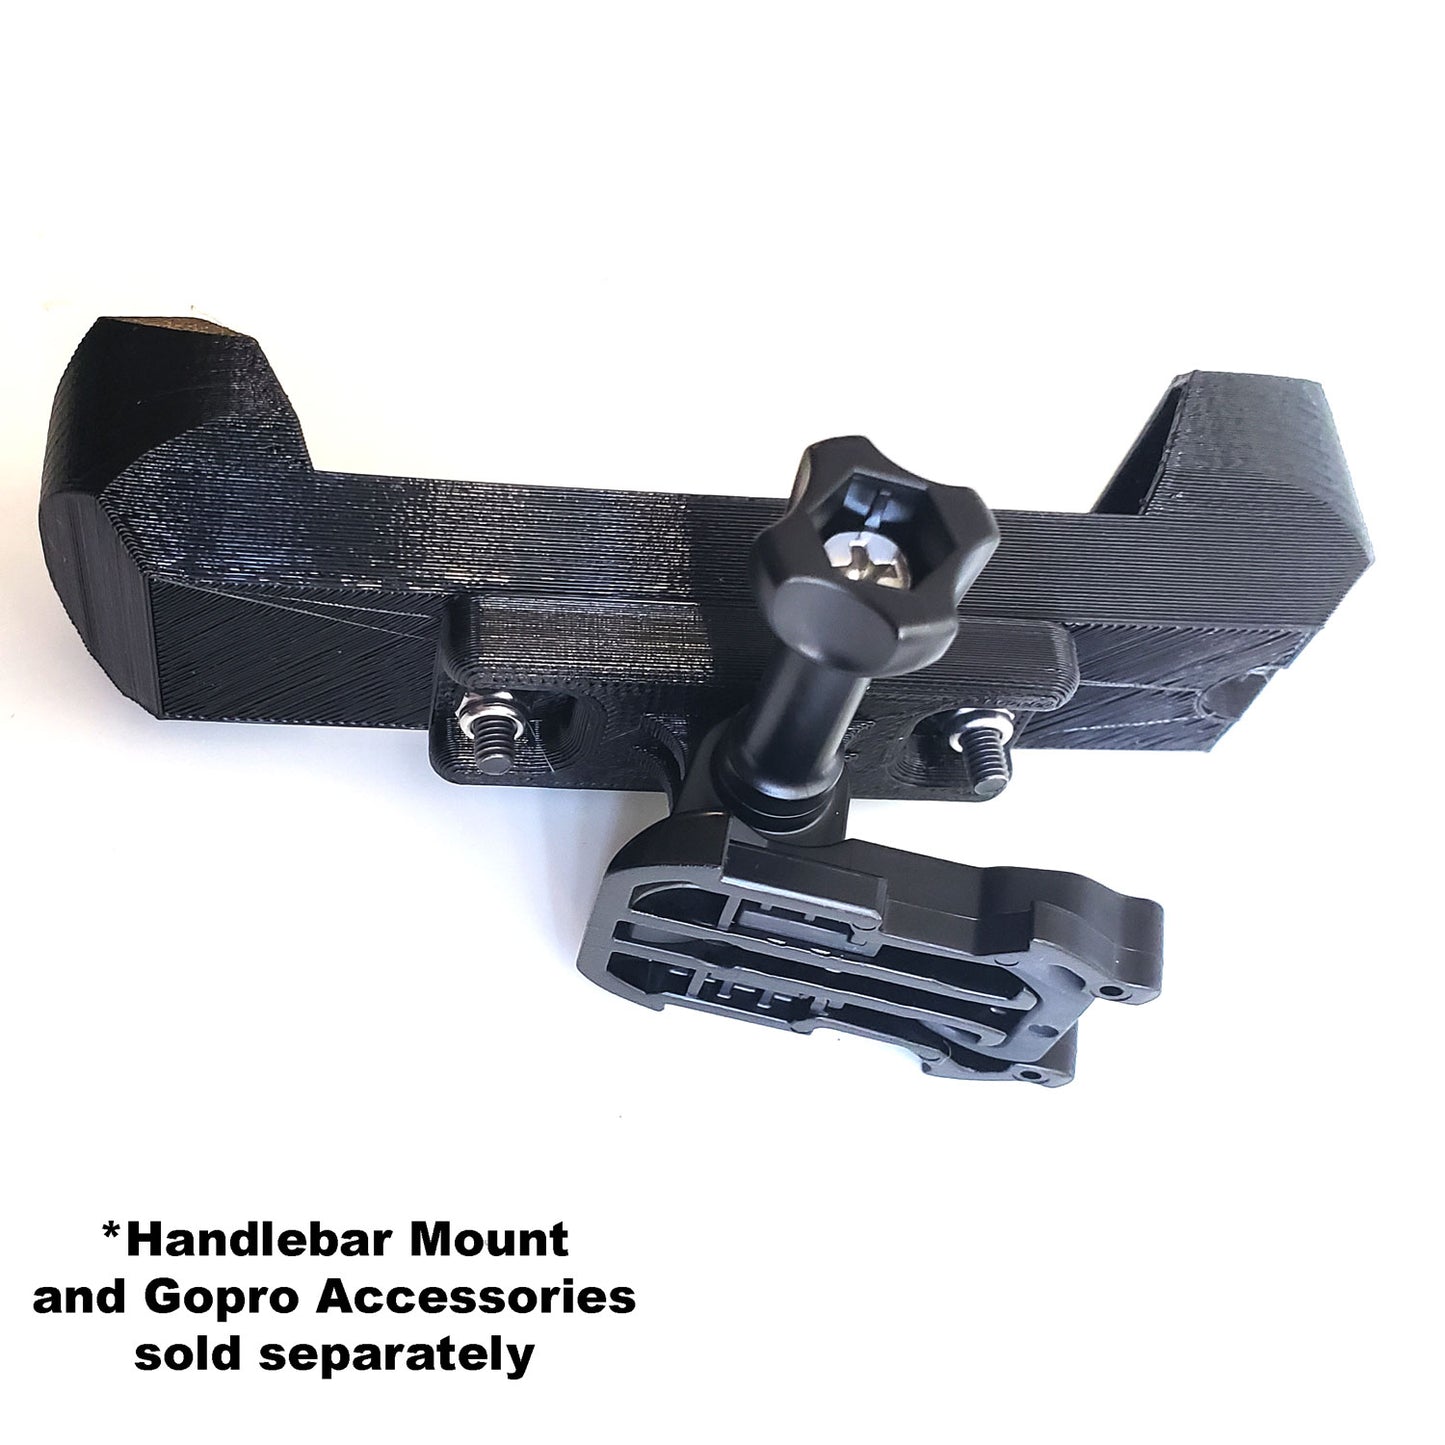 Gopro mount adapter for Skydio 2 Handlebar Beacon mount